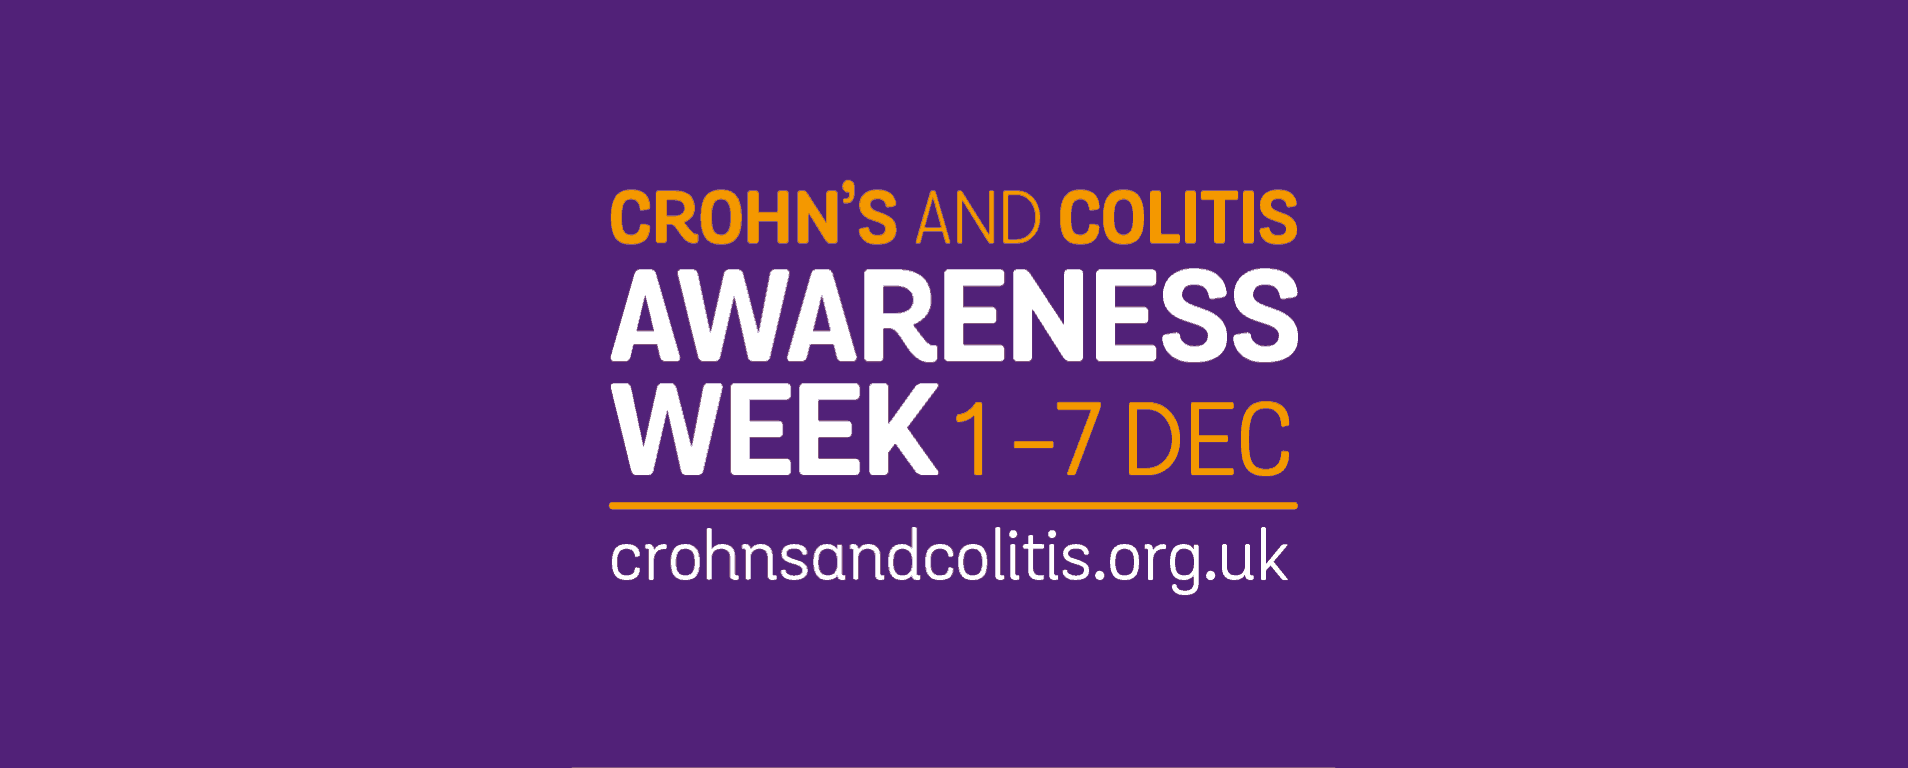 Crohn's and Collitus Awareness Week dates